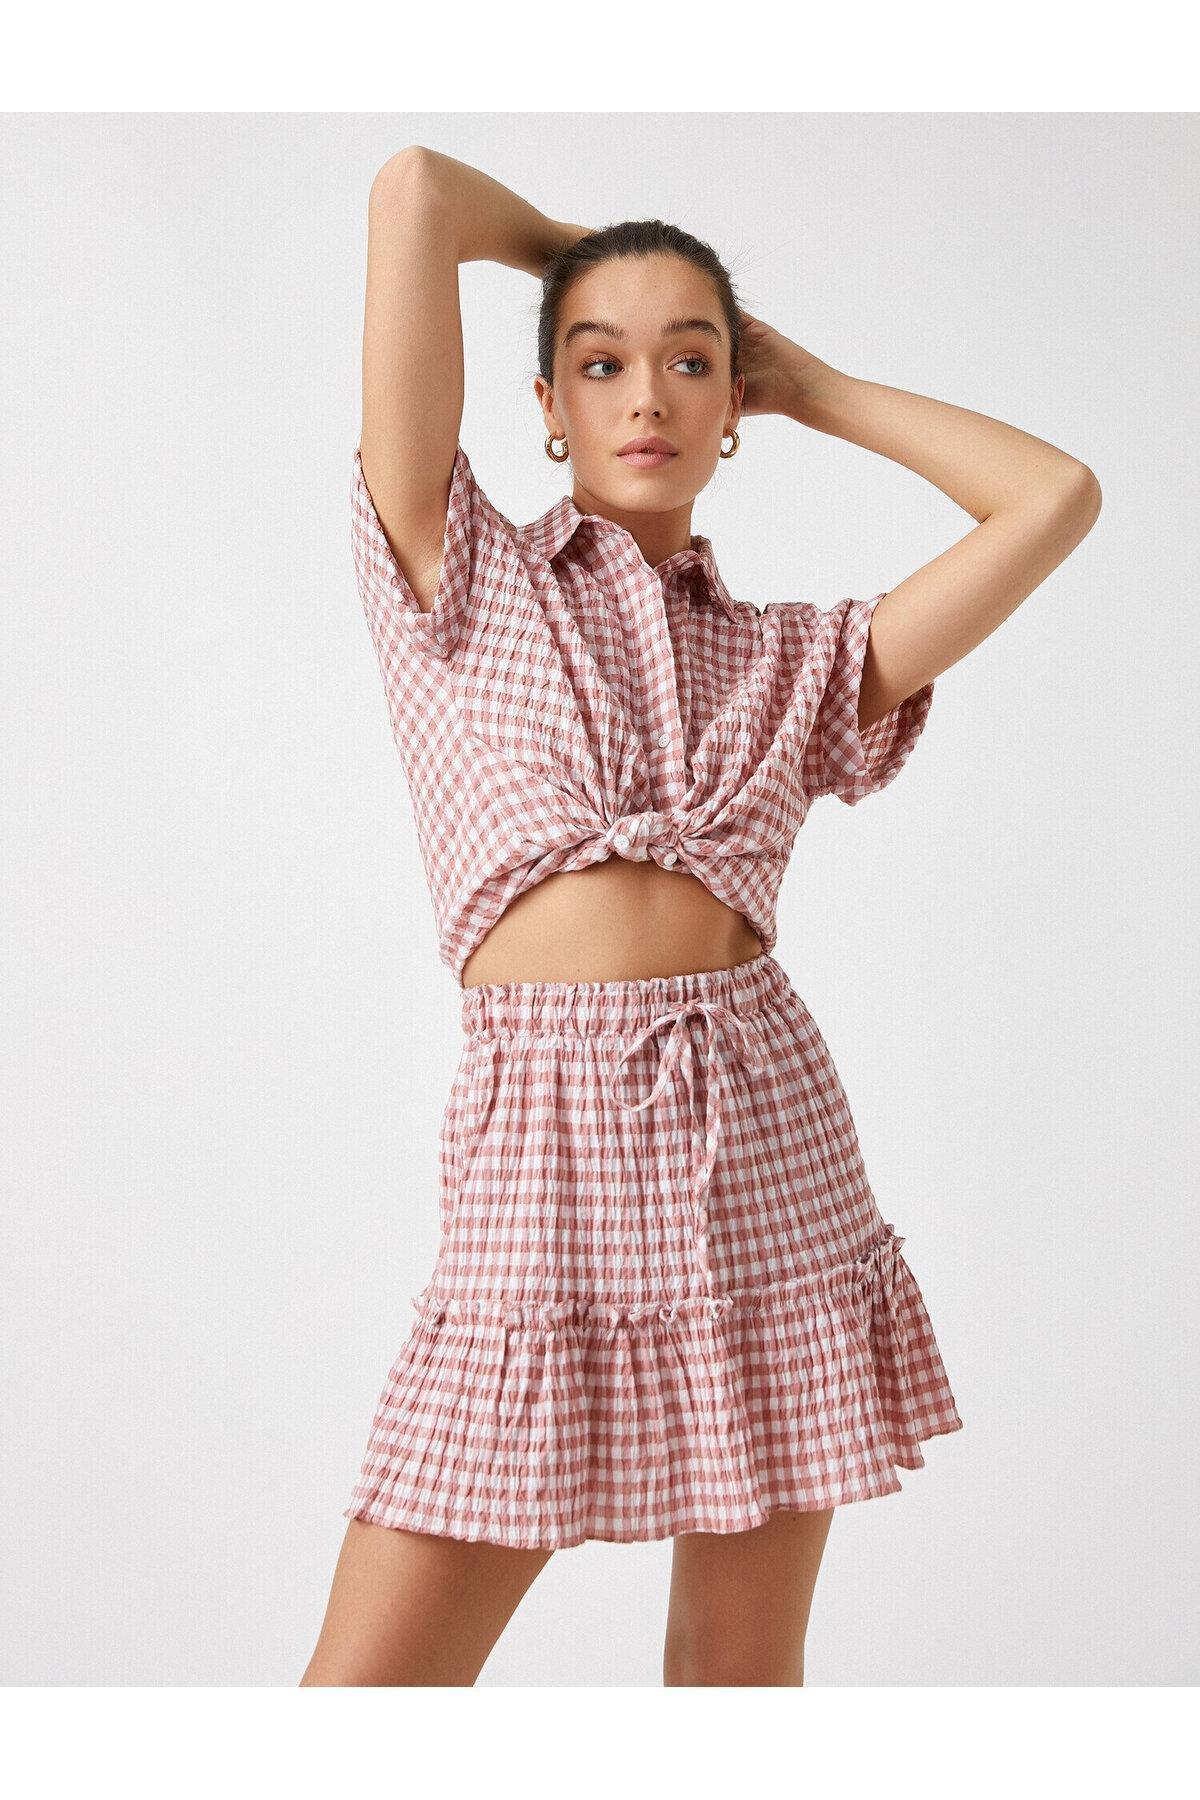 Koton - Pink Checkered Short Sleeve Shirt